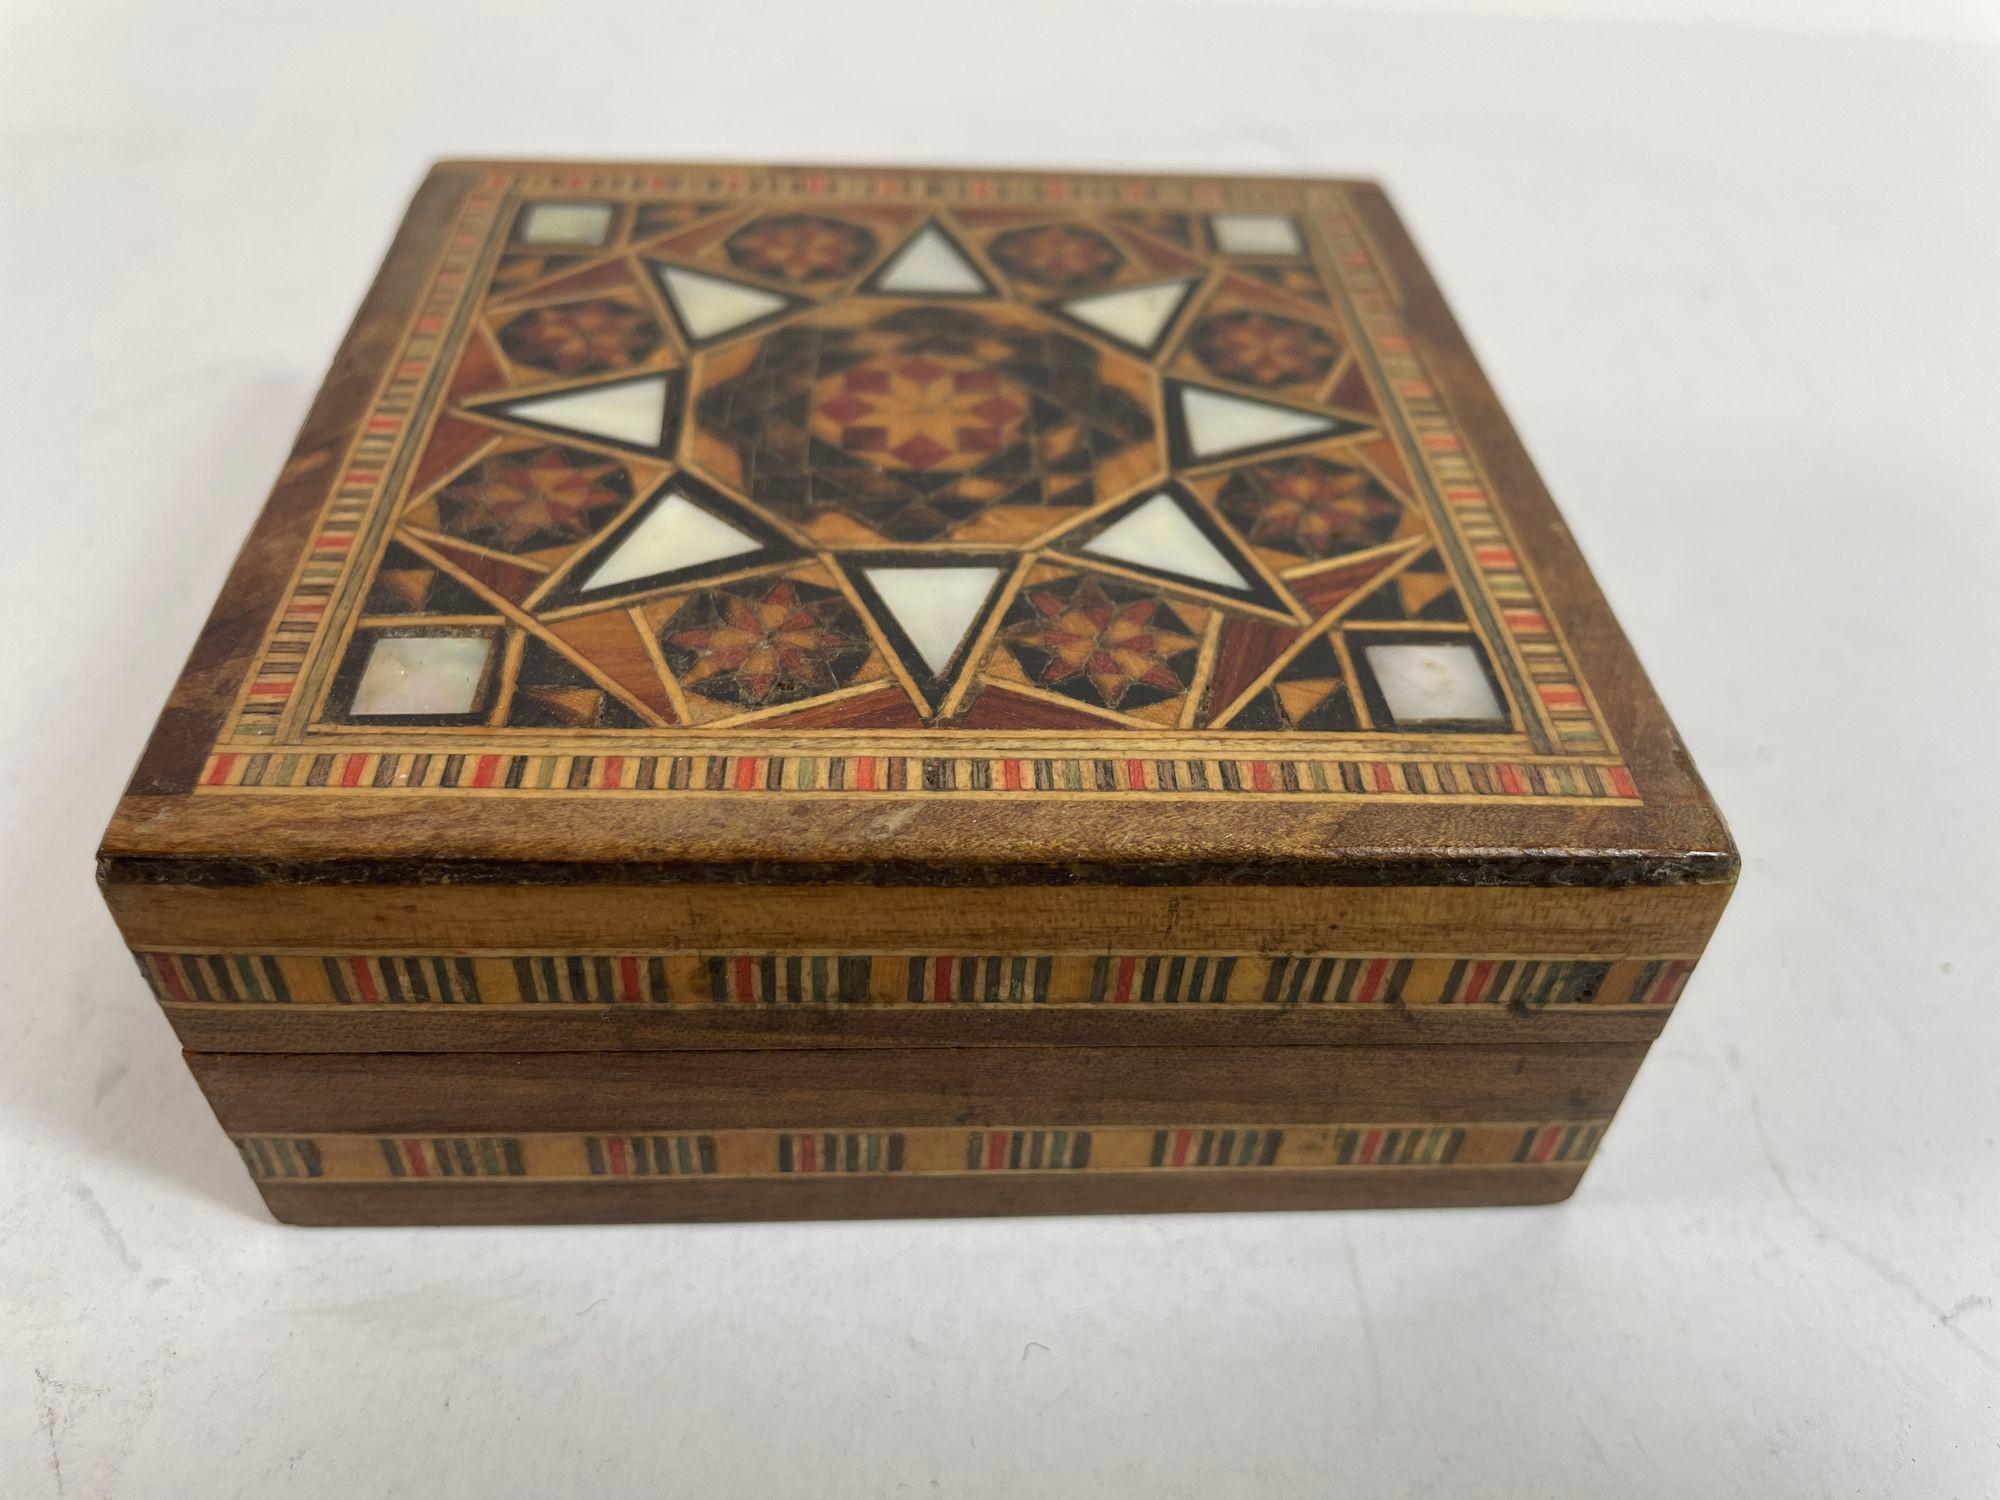 Vintage Middle Eastern Moorish Inlaid Marquetry Mosaic Trinket Box.
Boîte de rangement en marqueterie mauresque du Moyen-Orient.
L'incroyable savoir-faire de la marqueterie complexe de bois fruitier avec incrustation de motifs géométriques